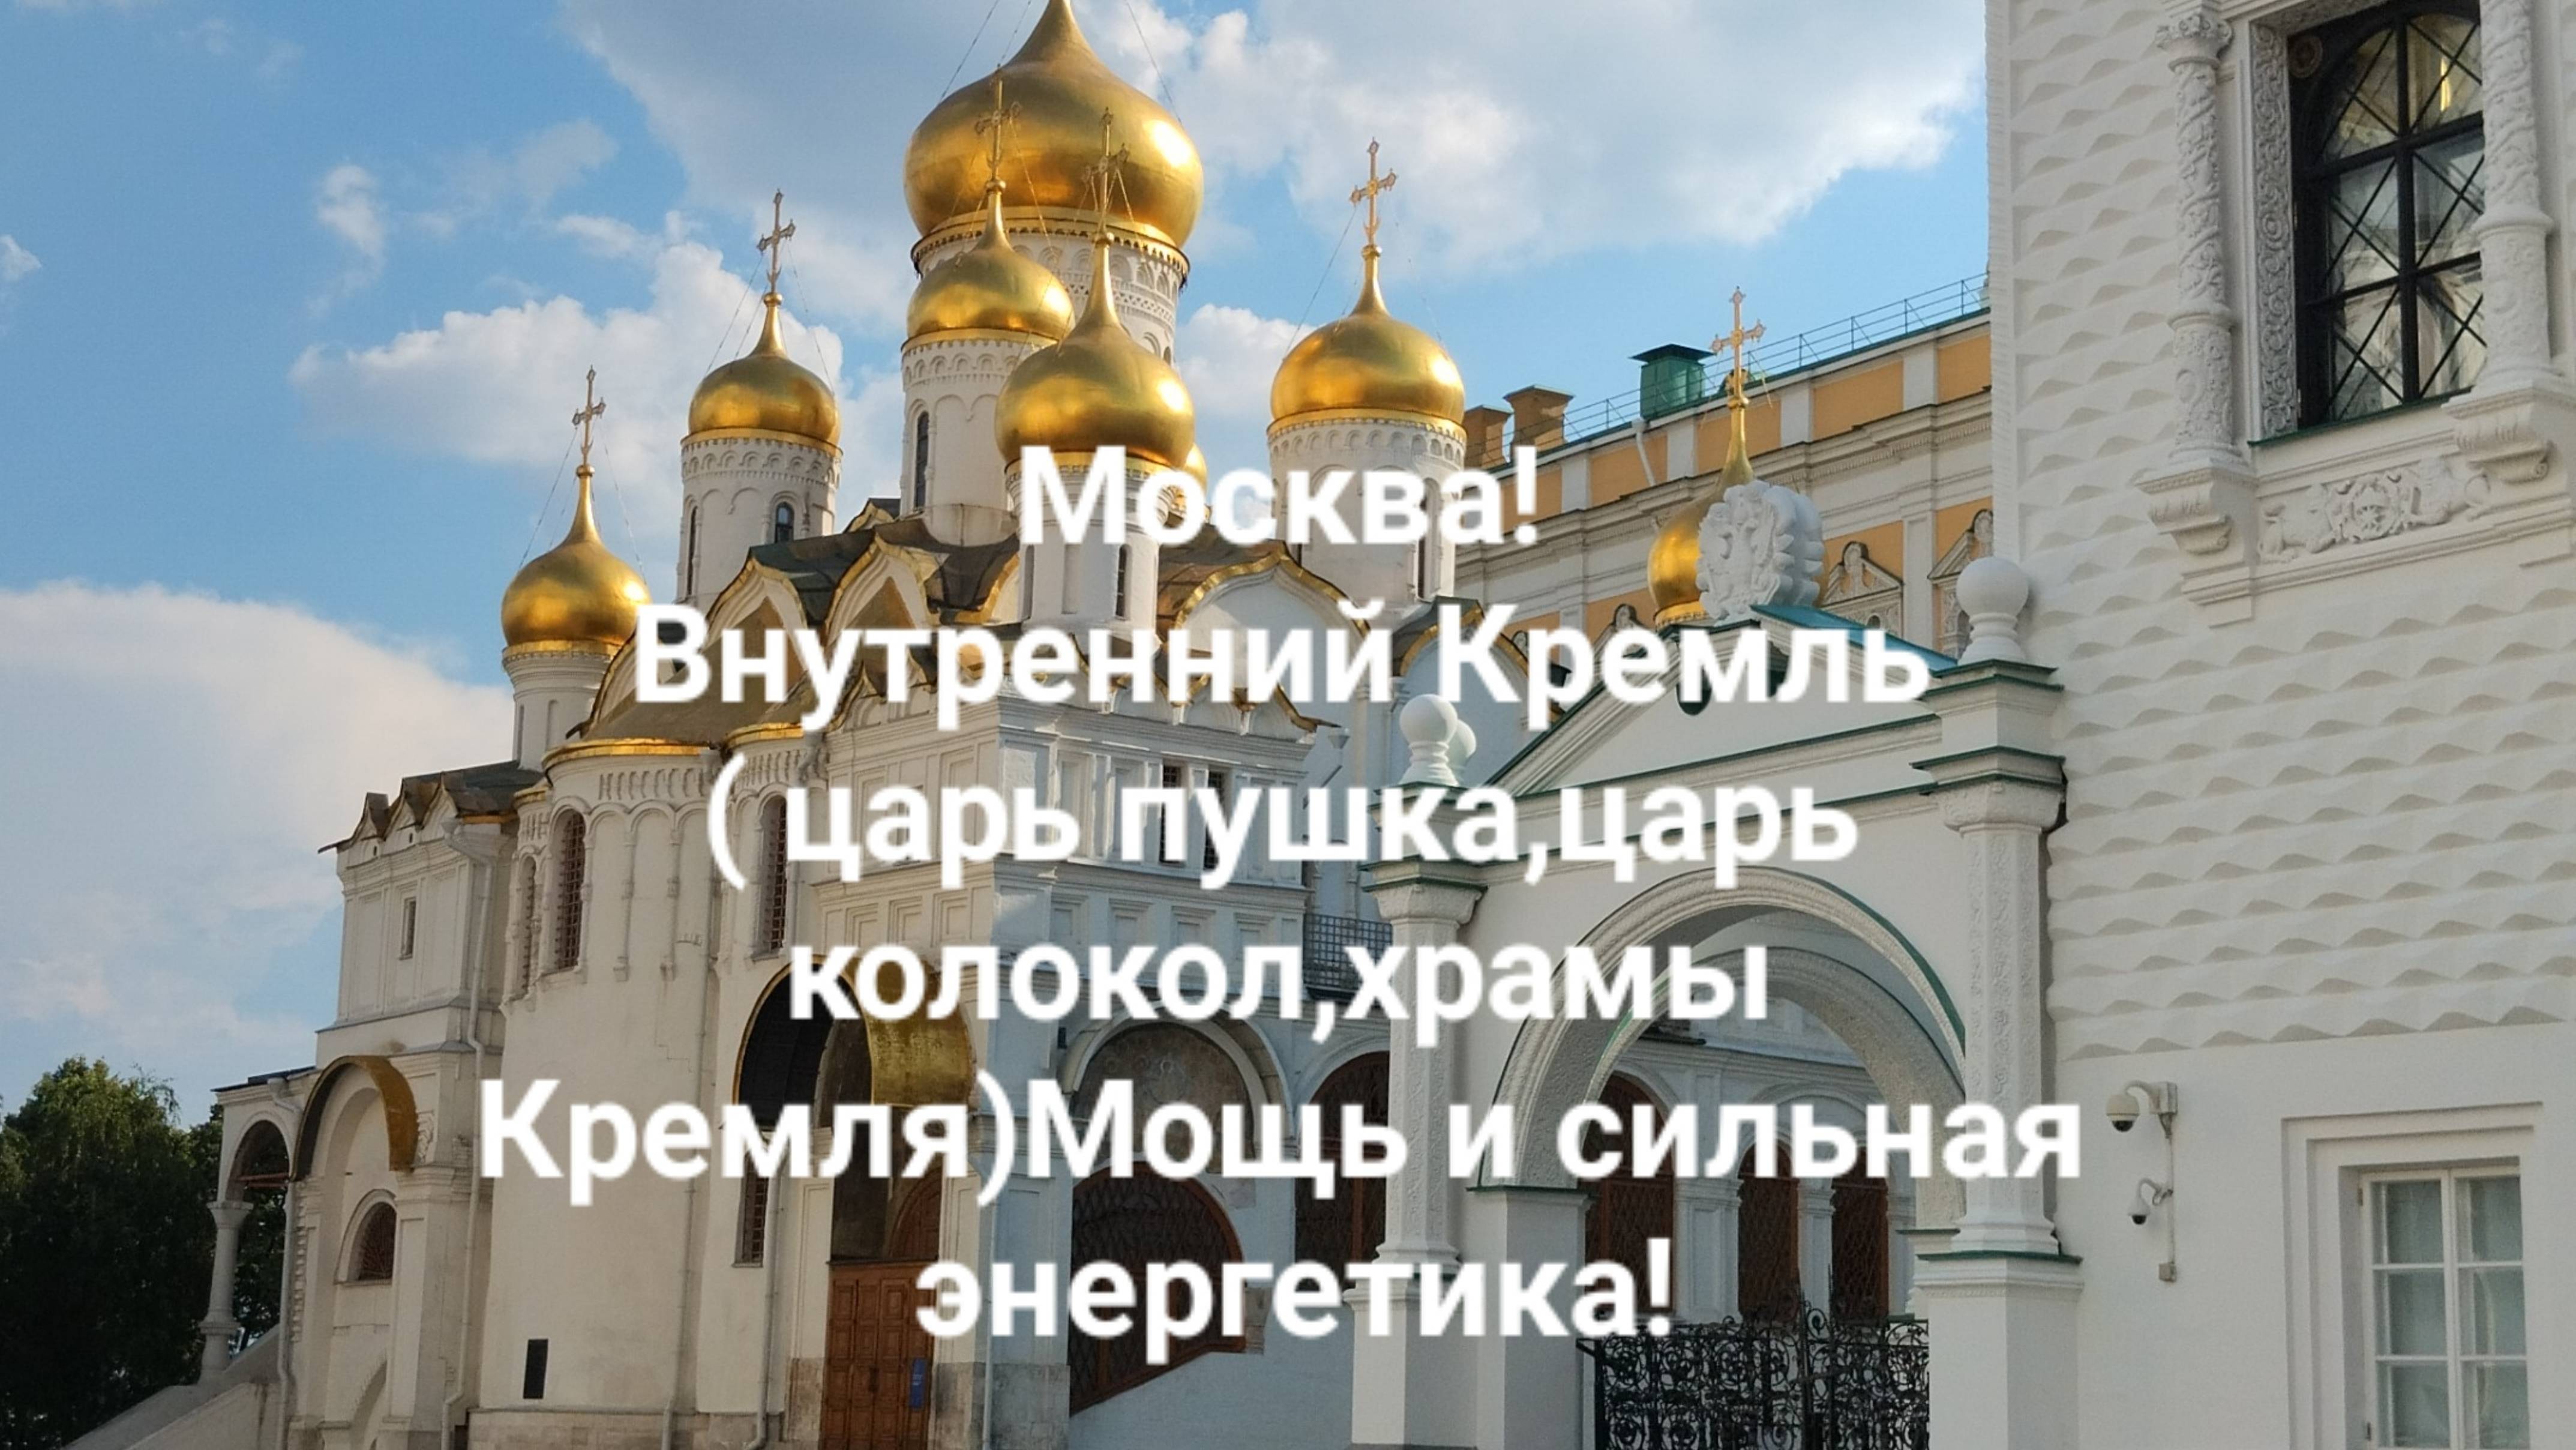 Москва! Внутренний Кремль ( царь пушка,царь колокол,храмы Кремля)Мощь и сильная энергетика!